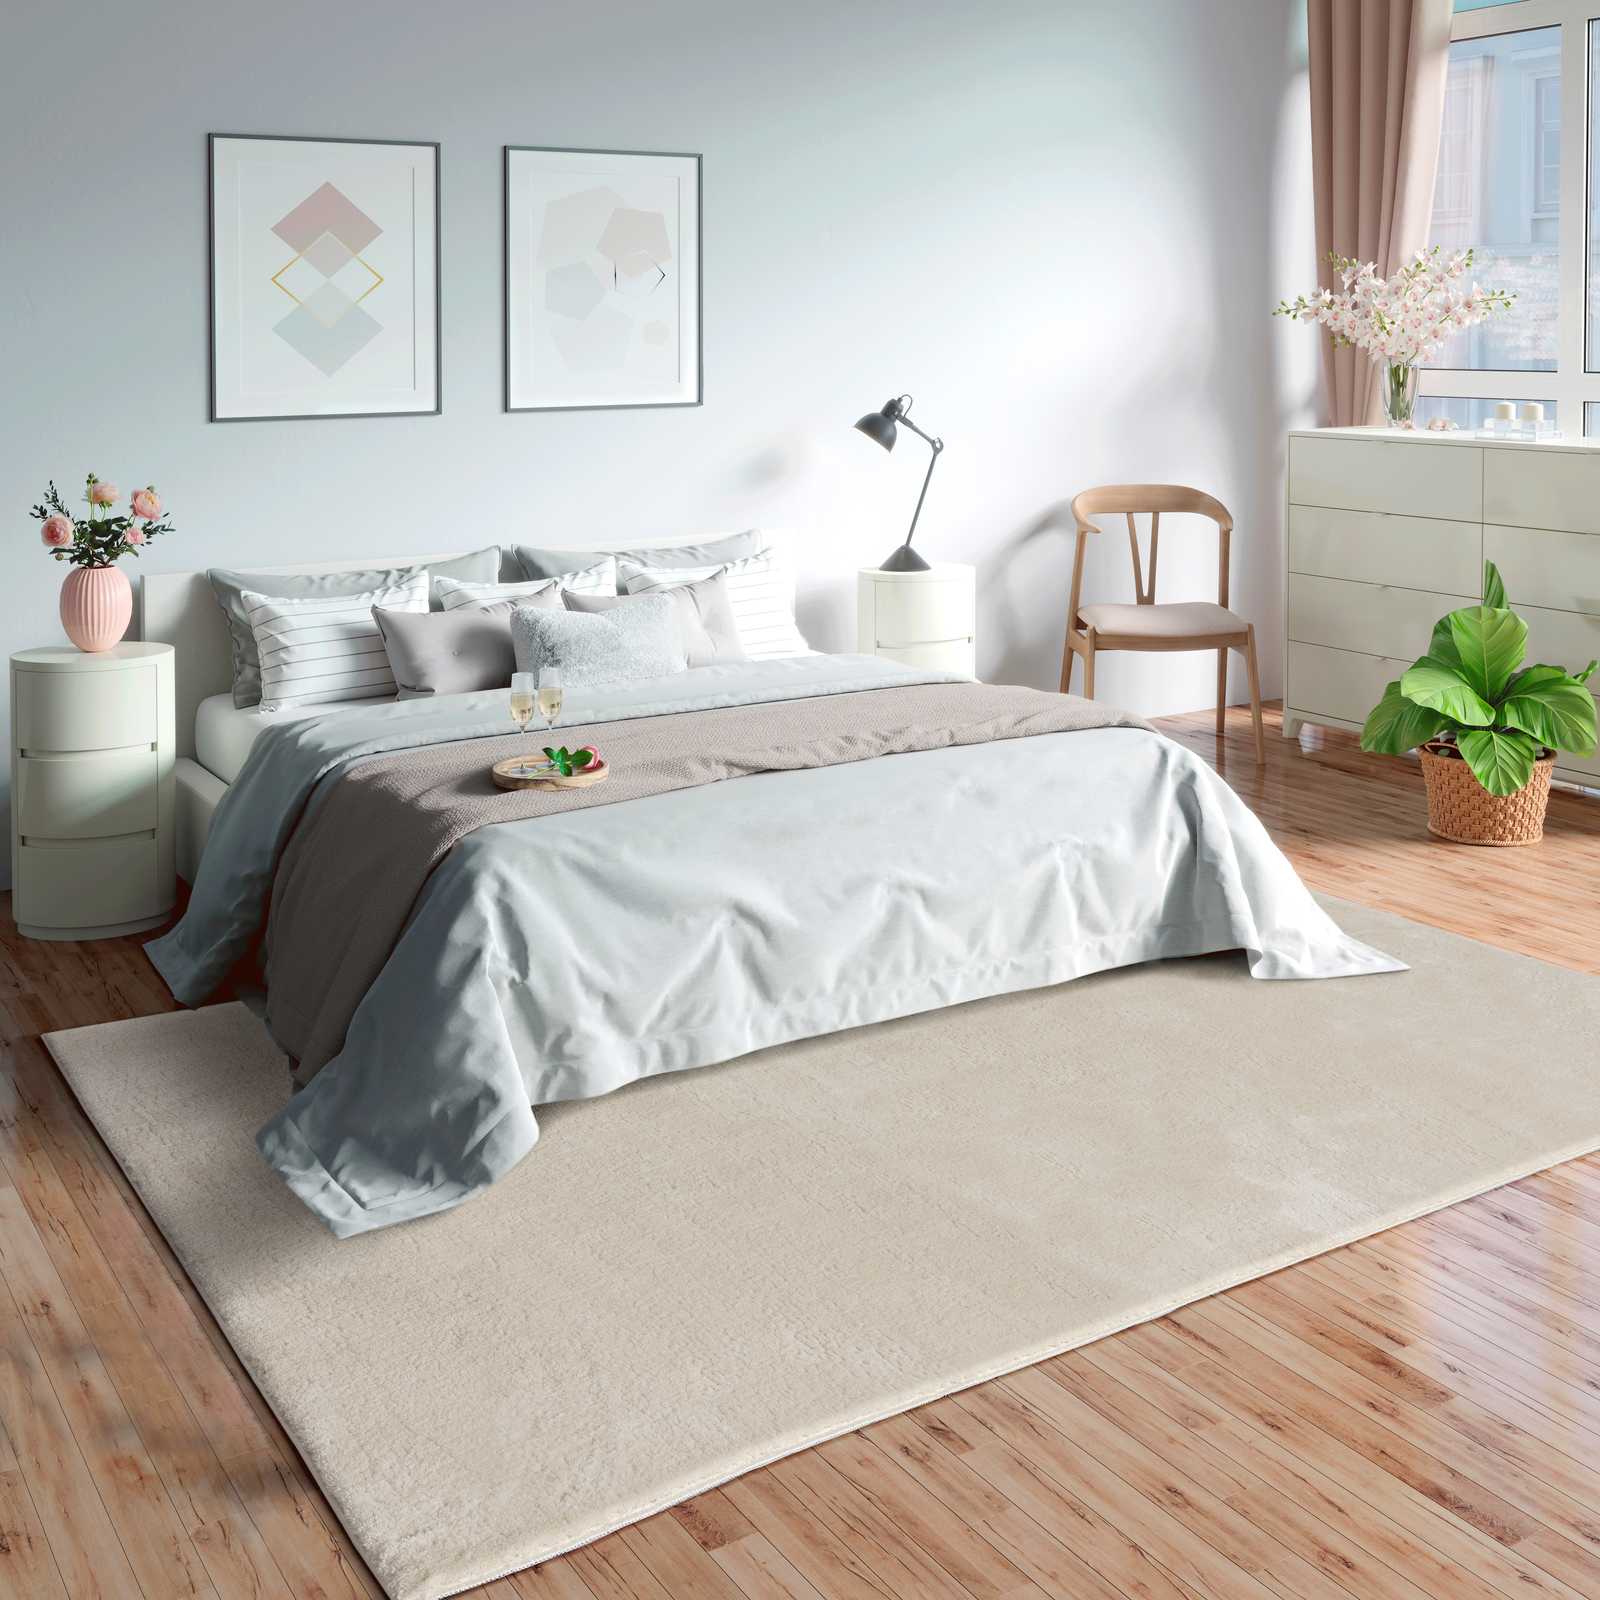         Soft high pile carpet in beige - 110 x 60 cm
    